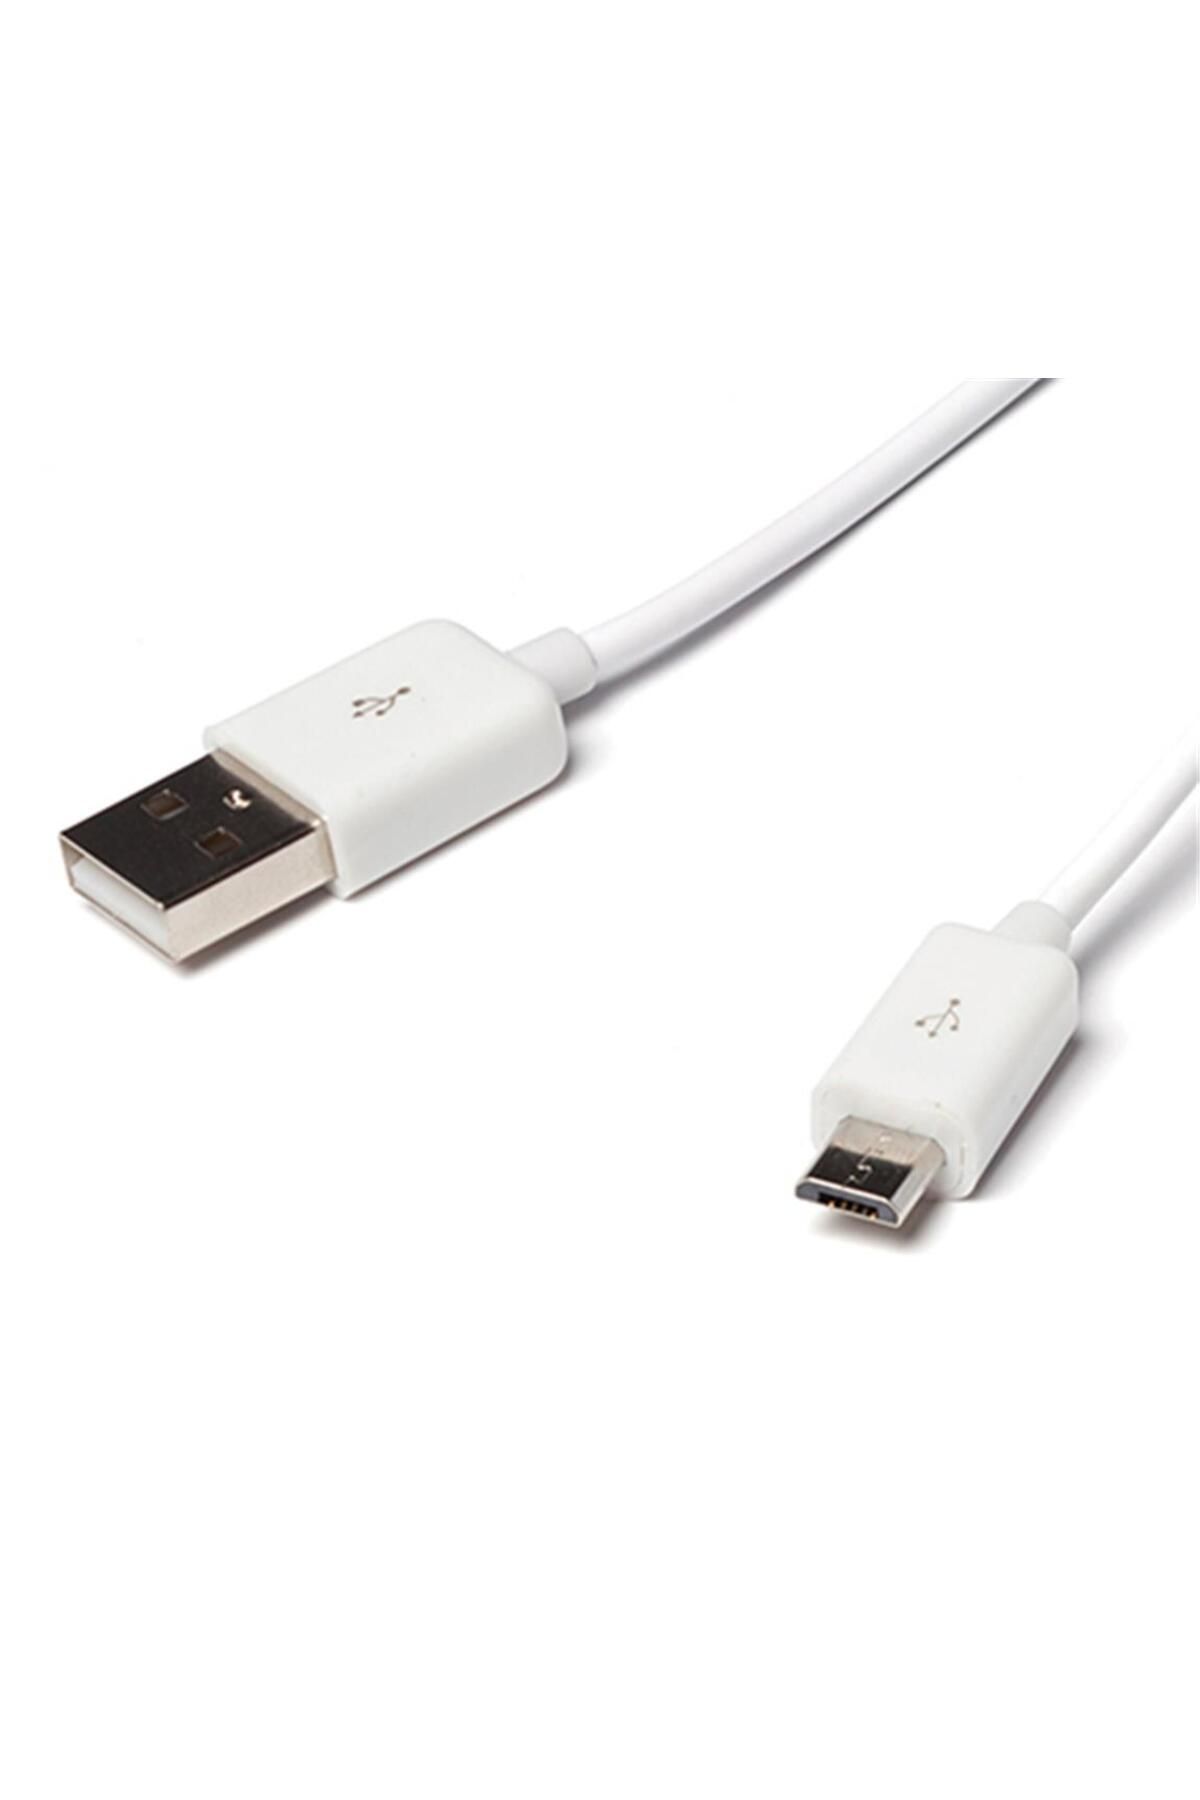 Sonorous USB TO MİCRO USB 1.5 METRE KABLO